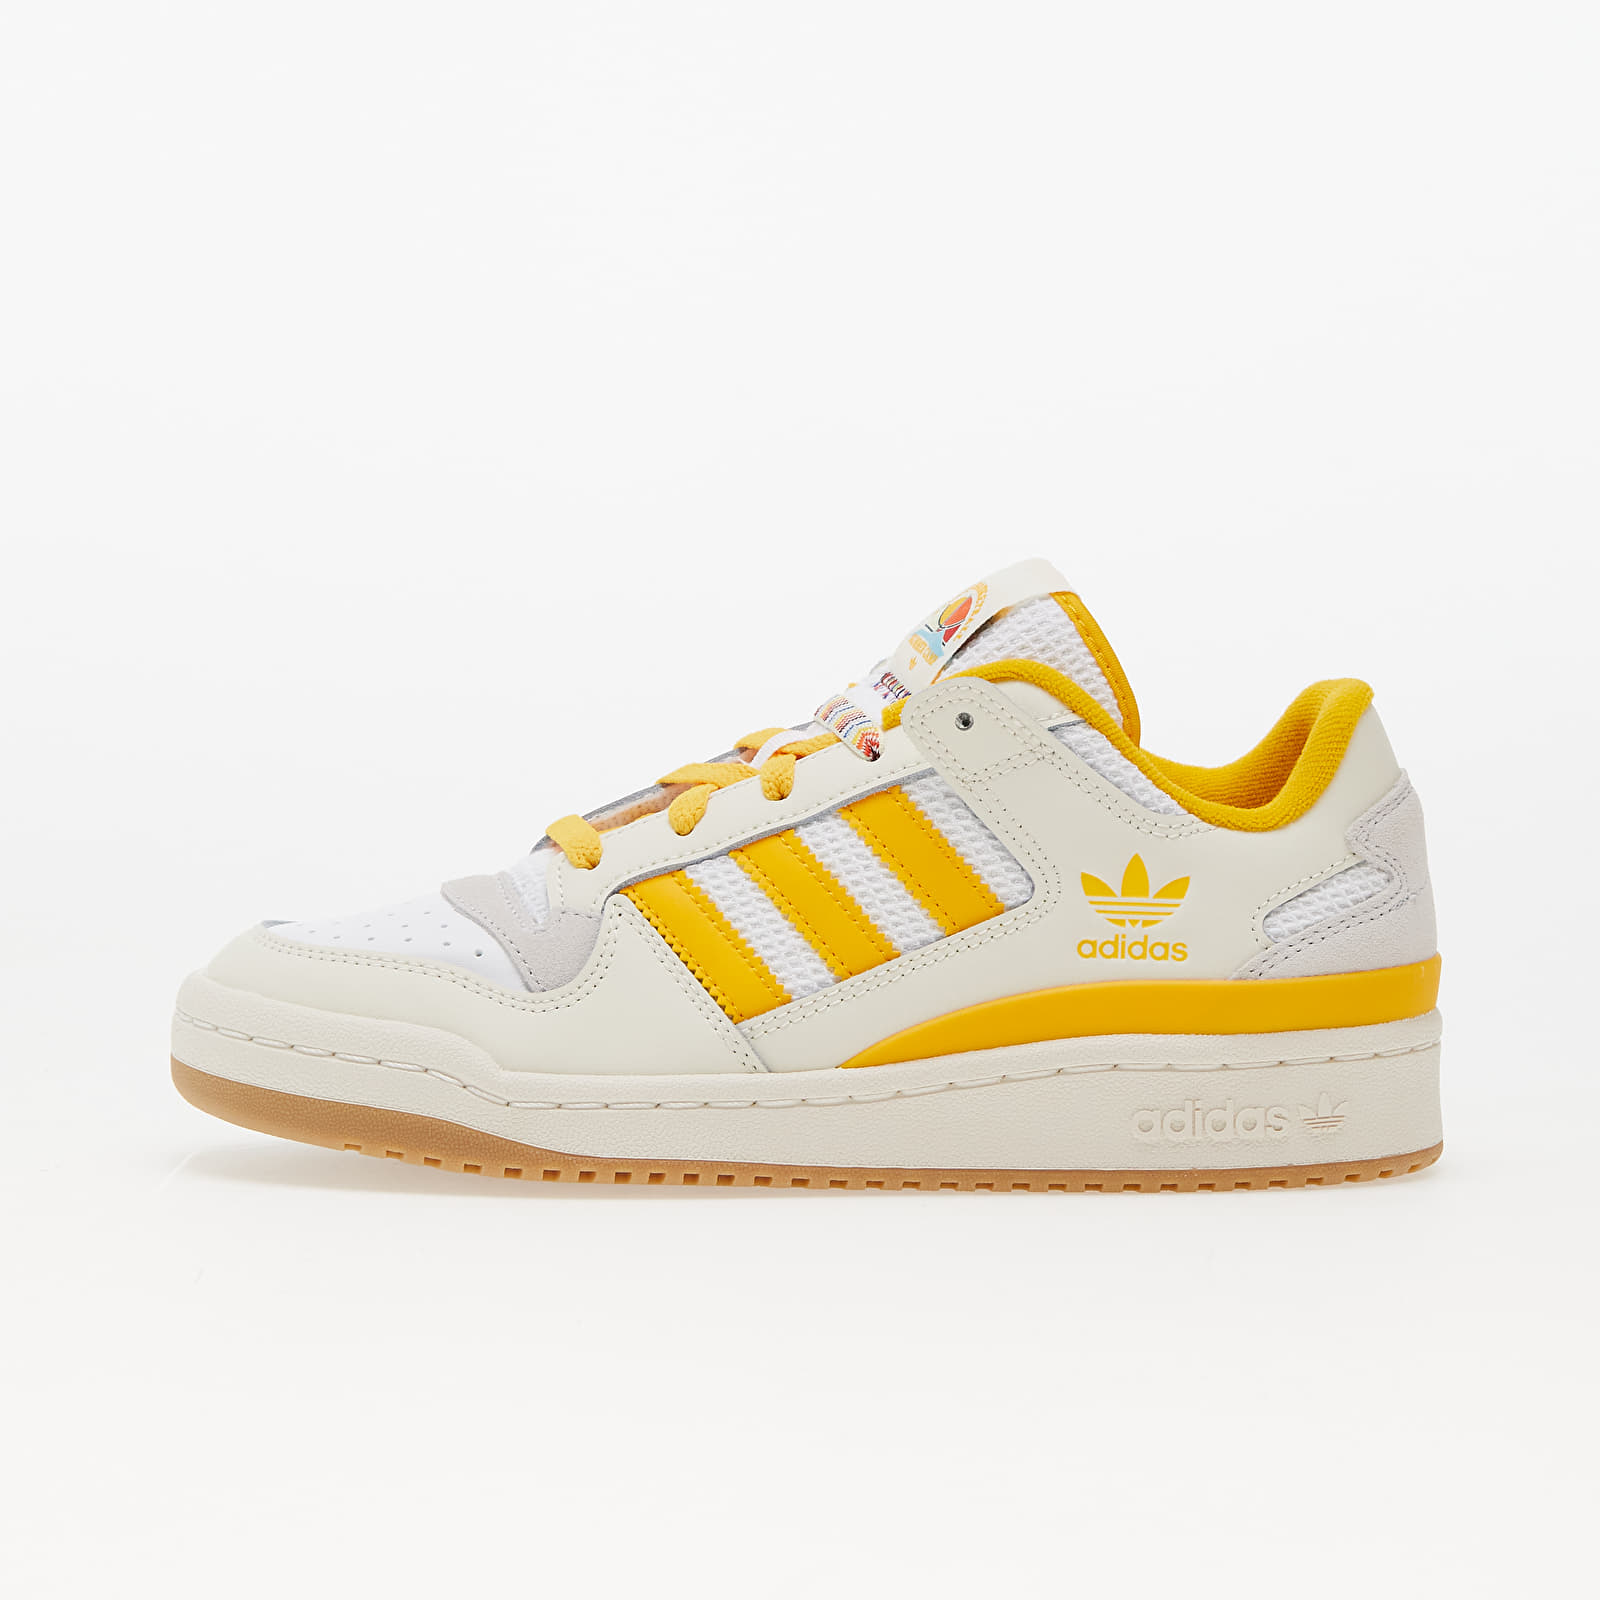 Baskets et chaussures pour femmes adidas Originals Forum Low Cl W Core White/ Creme Yellow/ Ftw White